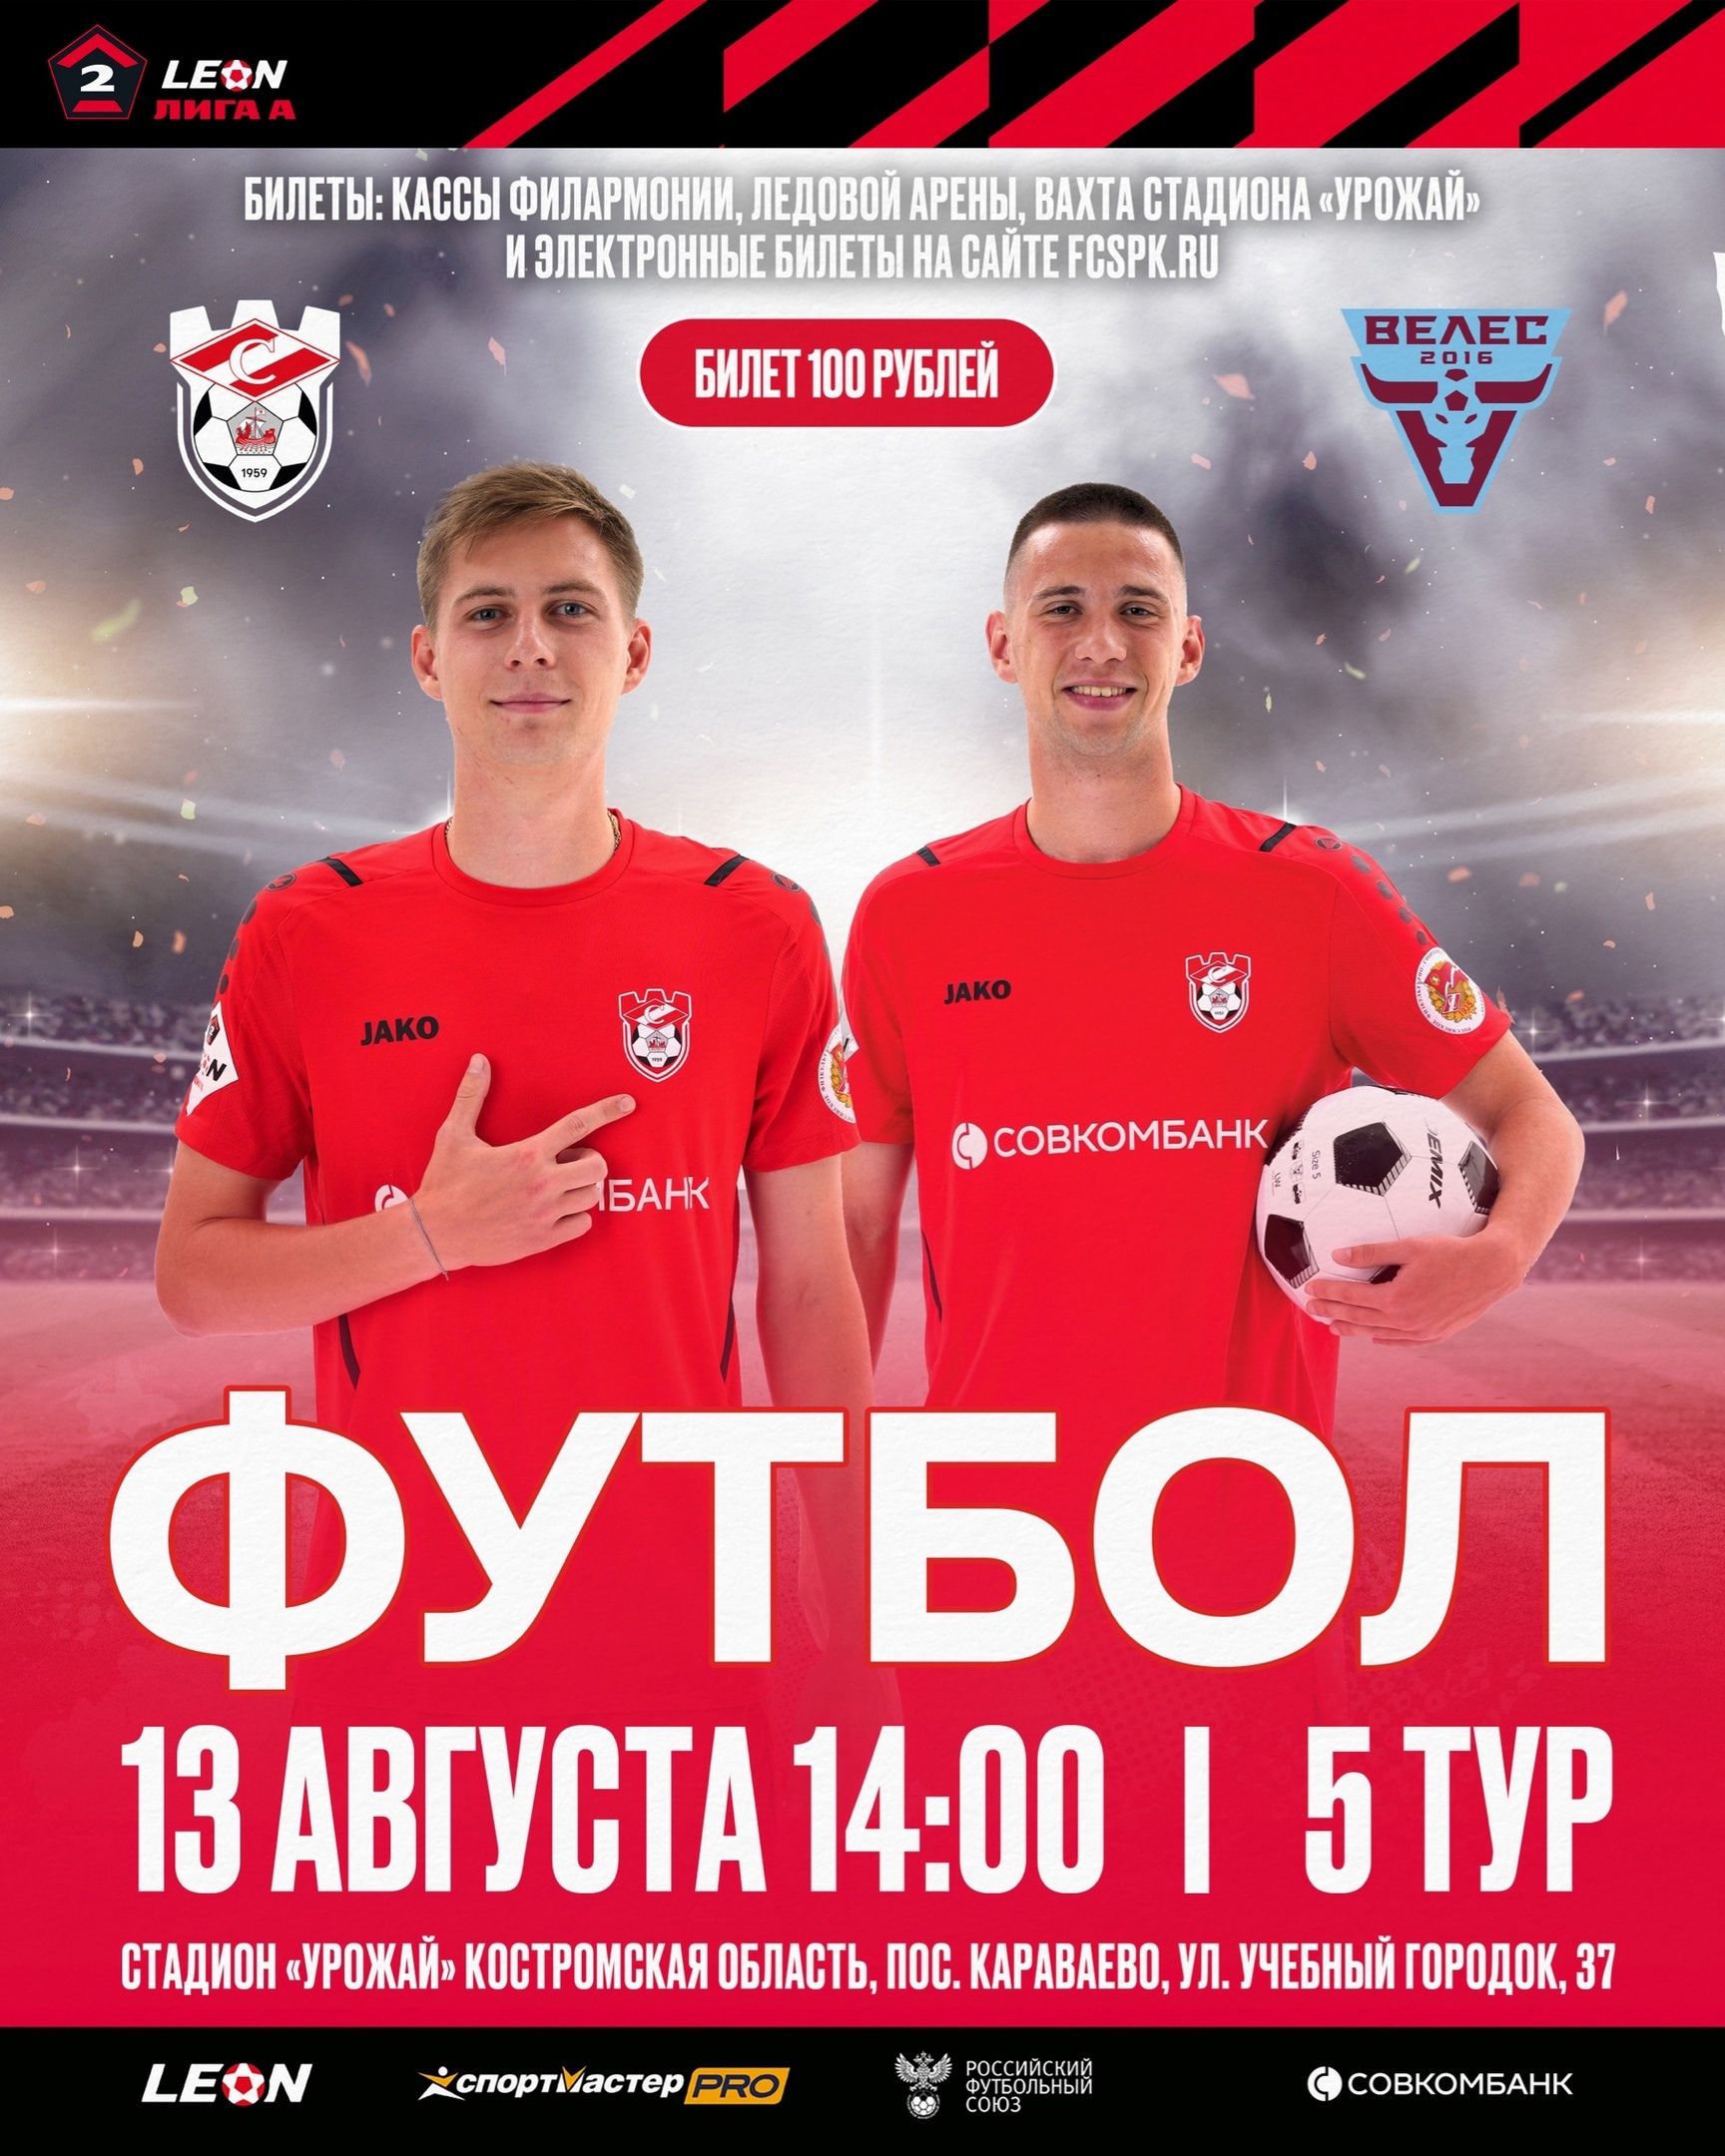 Костромской «Спартак» приглашает любителей футбола отметить День города на матче и получить подарки